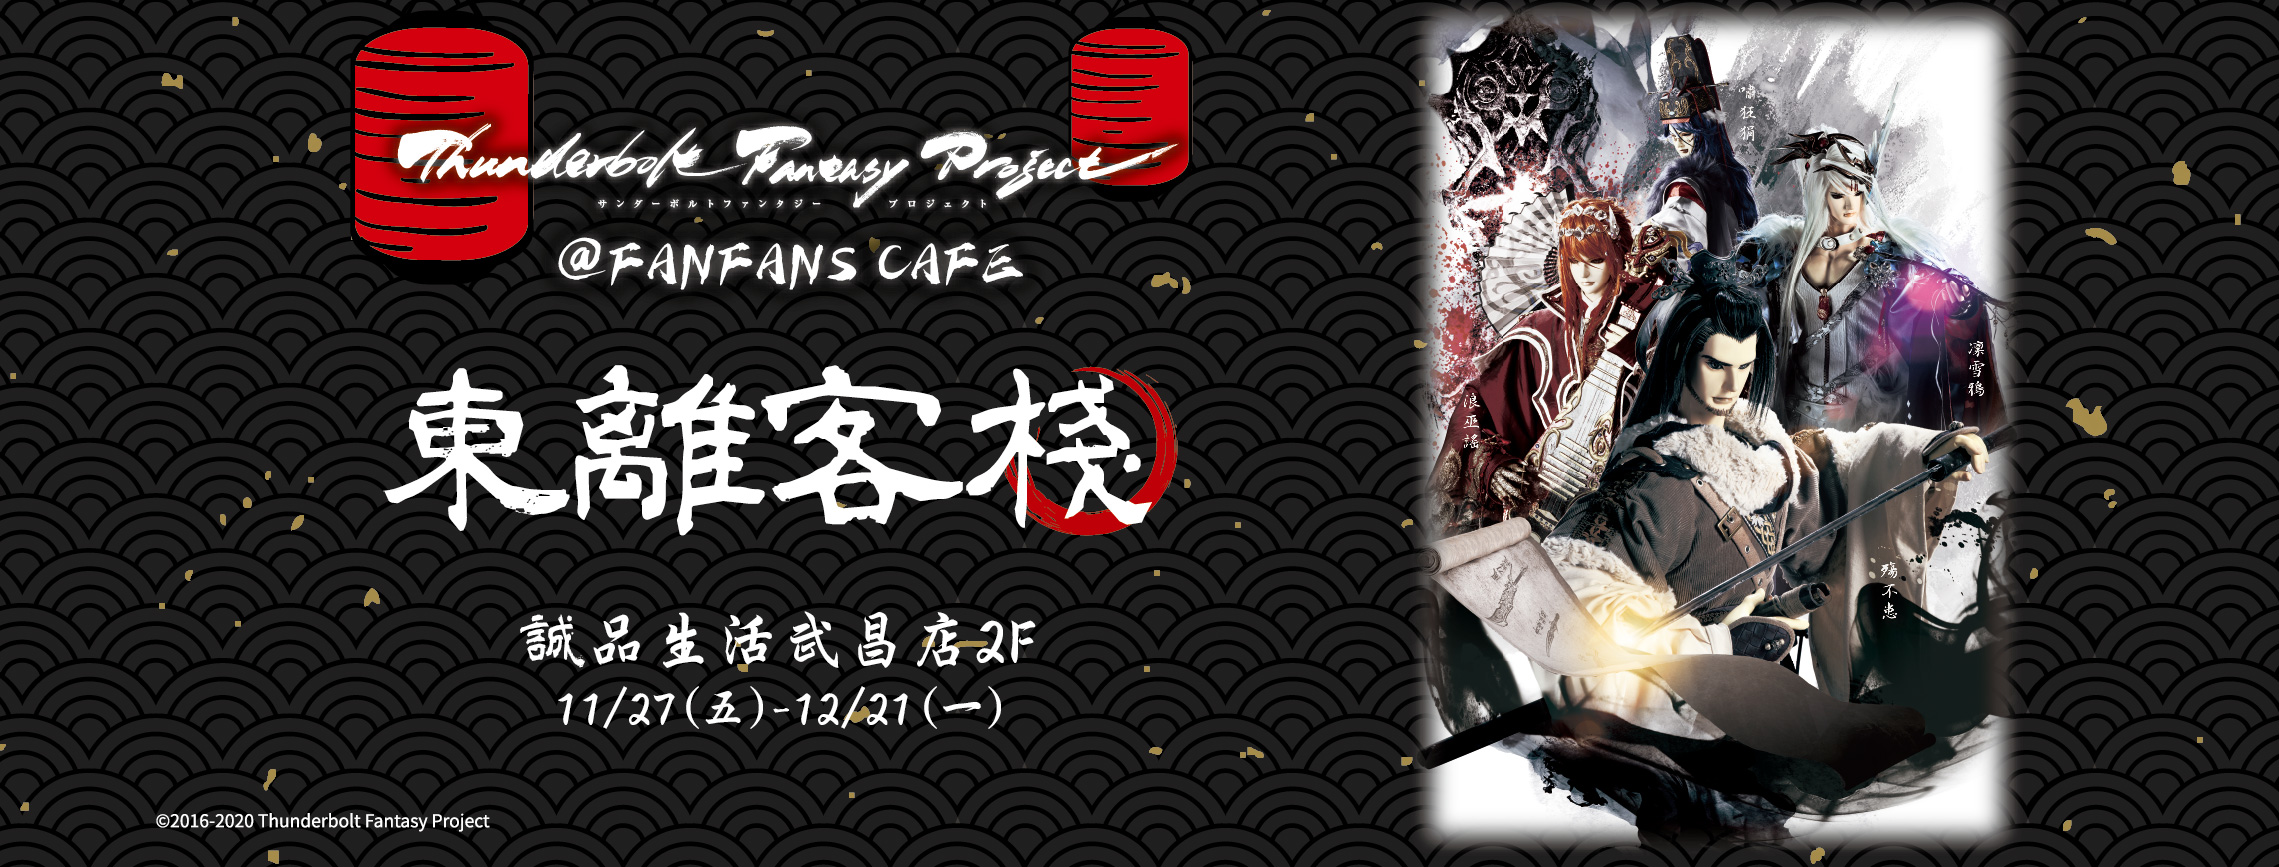 【東離客棧】西門町 FanFans Cafe 粉粉快閃主題餐廳~延長至2021/1/14 @麻吉小兔。世界行旅